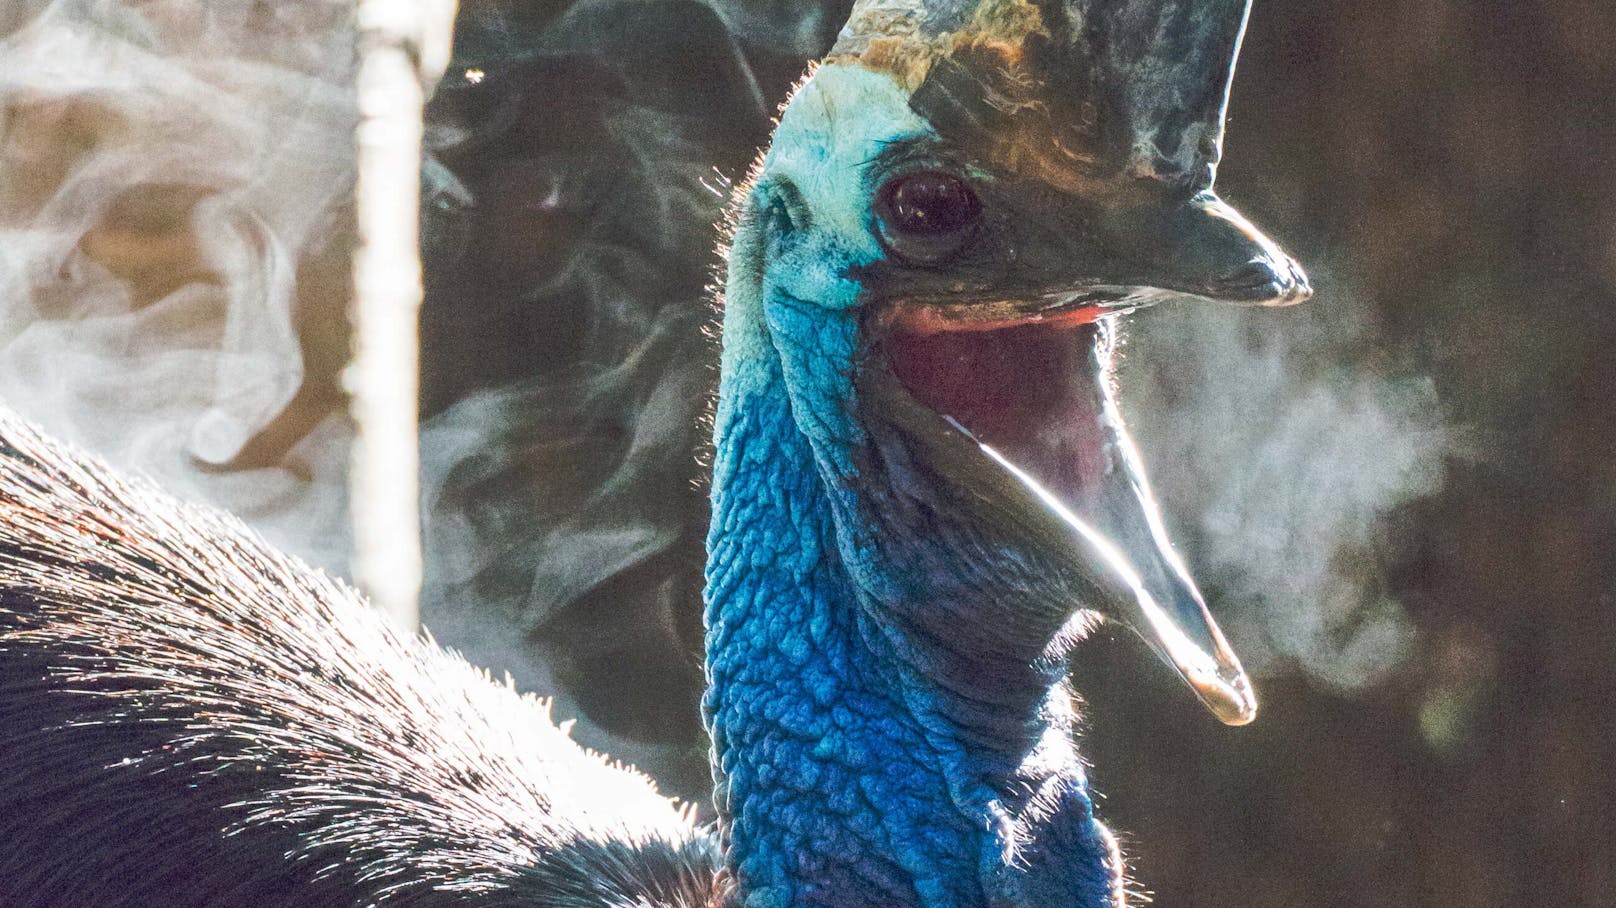 Kasuare gelten nach Angaben des San Diego Zoos als "tödlichste Vogelart der Welt".